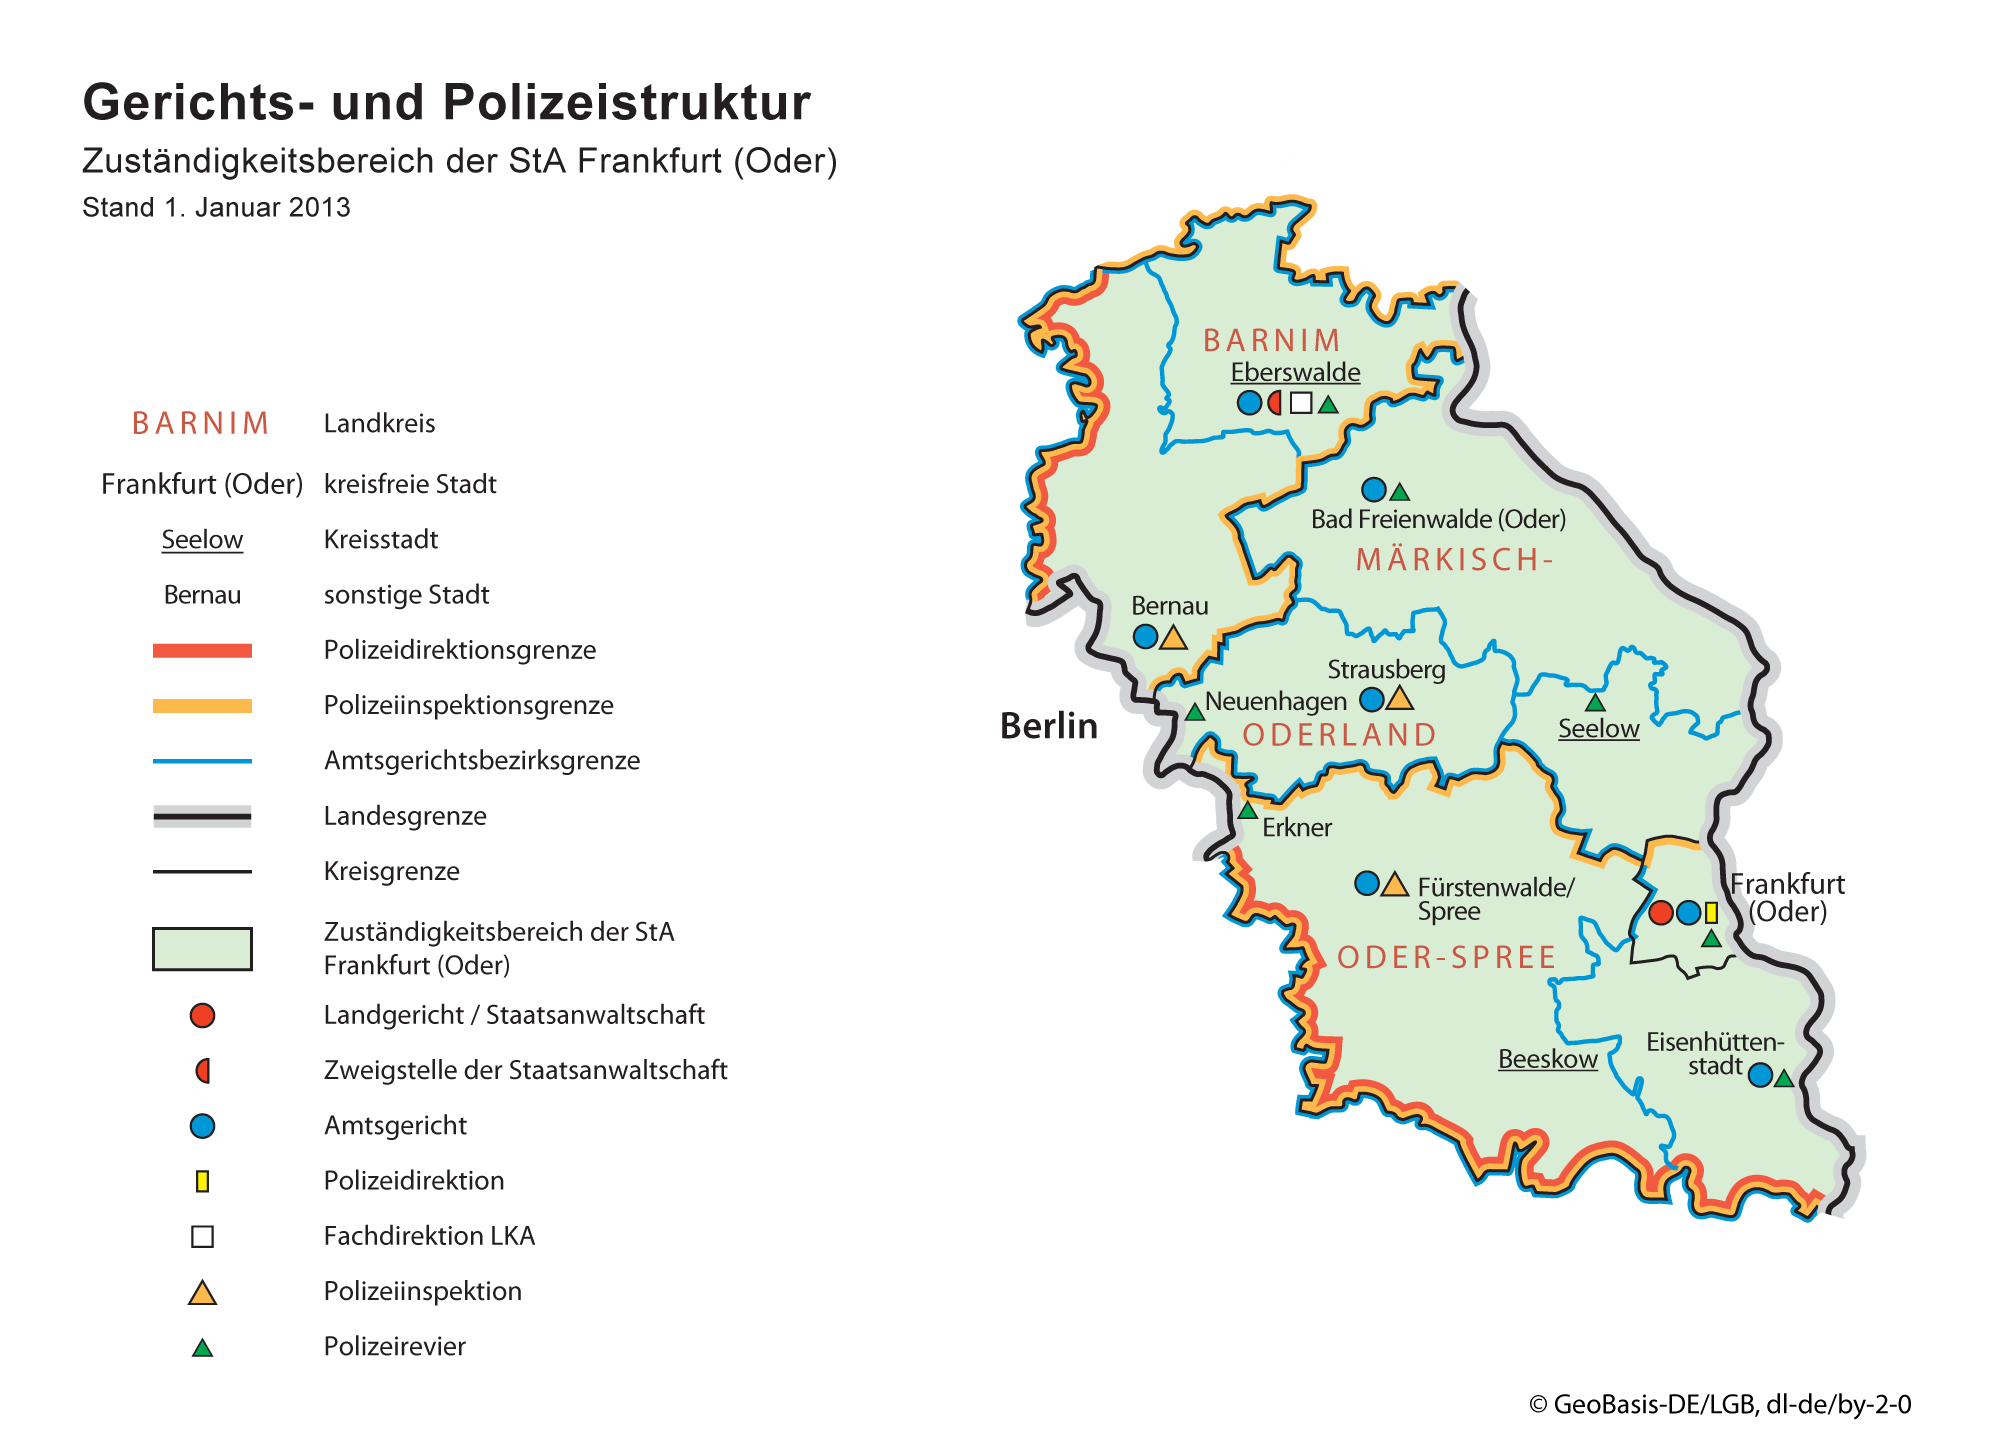 Karte zu der Gerichts- und Polizeistruktur für den Zuständigkeitsbereich der Staatsanwaltschaft Frankfurt (Oder)